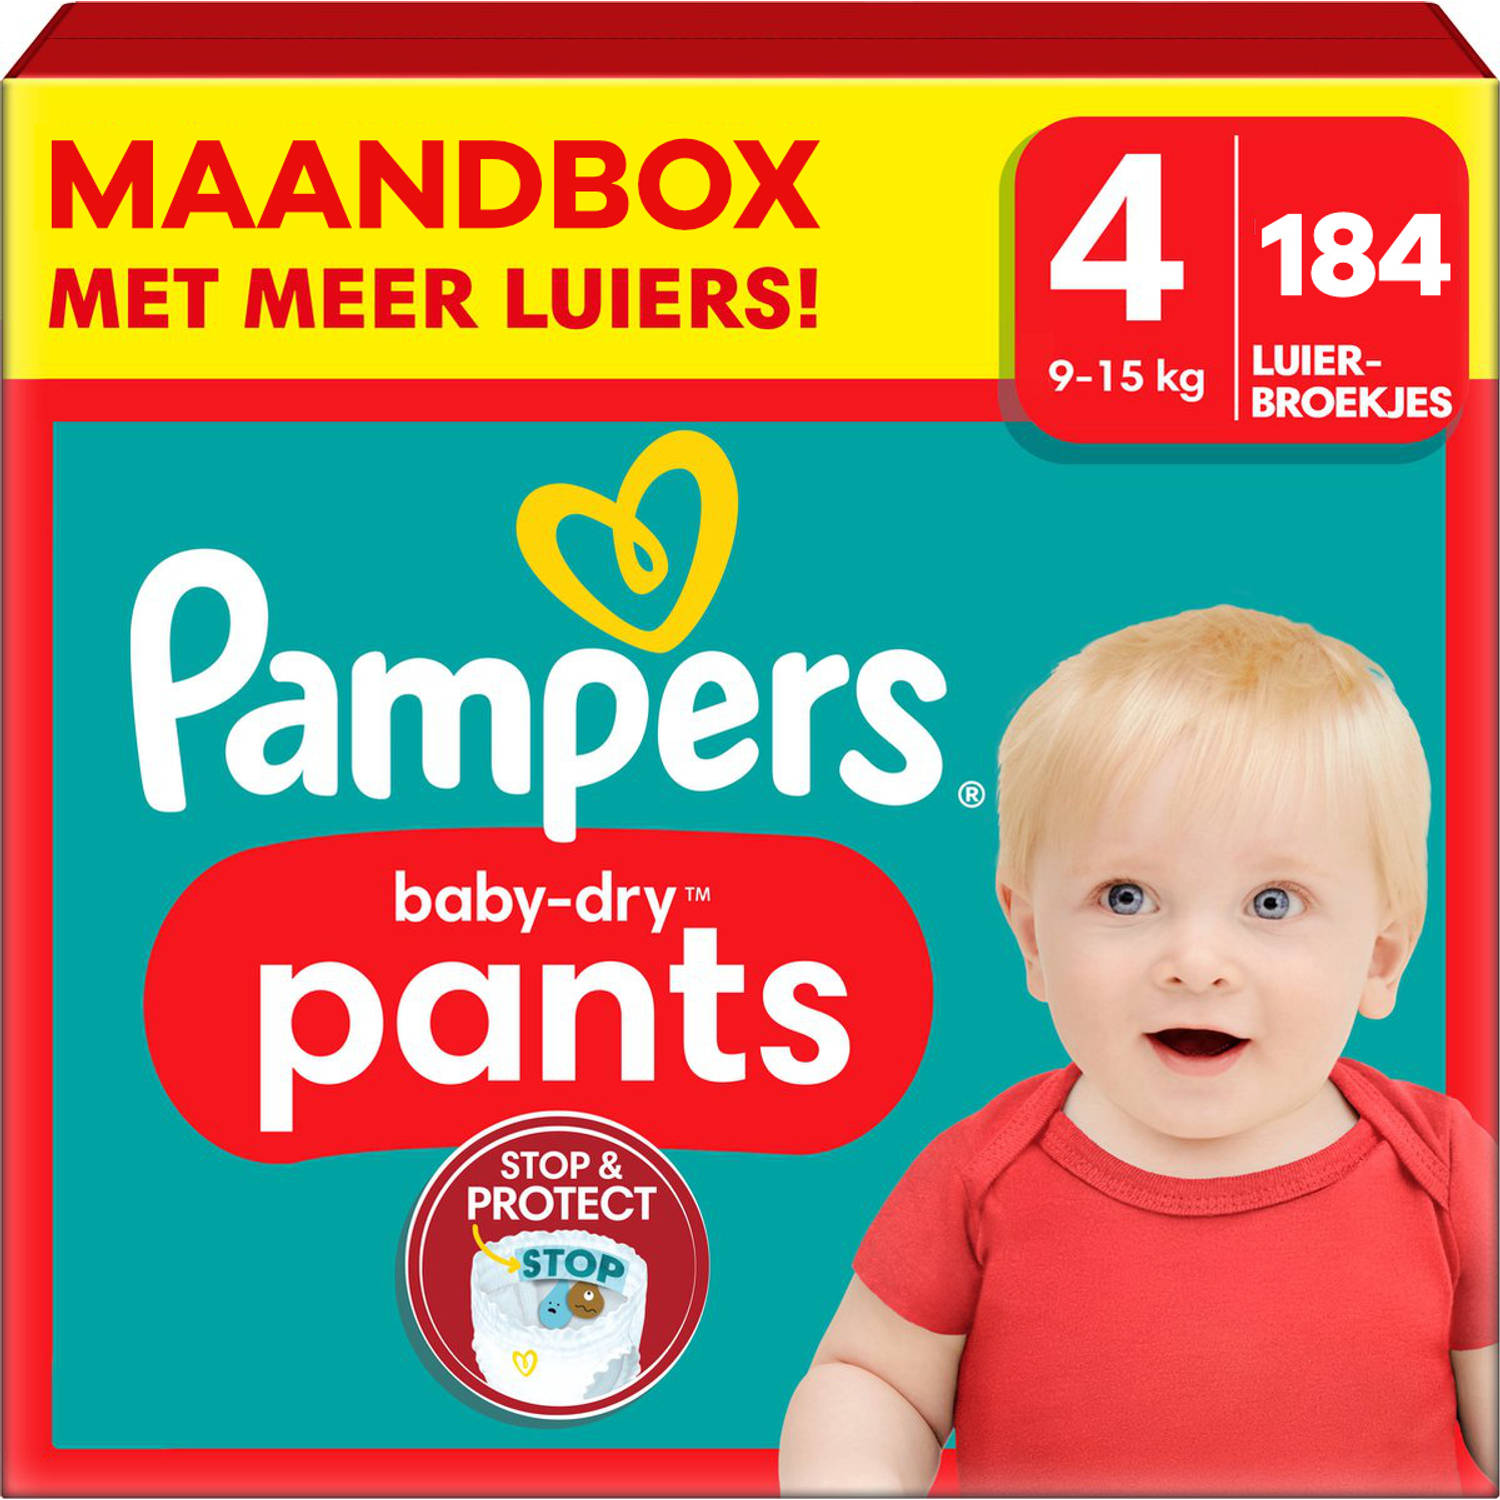 Pampers Baby Dry Pants Maat 4 Maandbox 184 stuks 9-15 KG